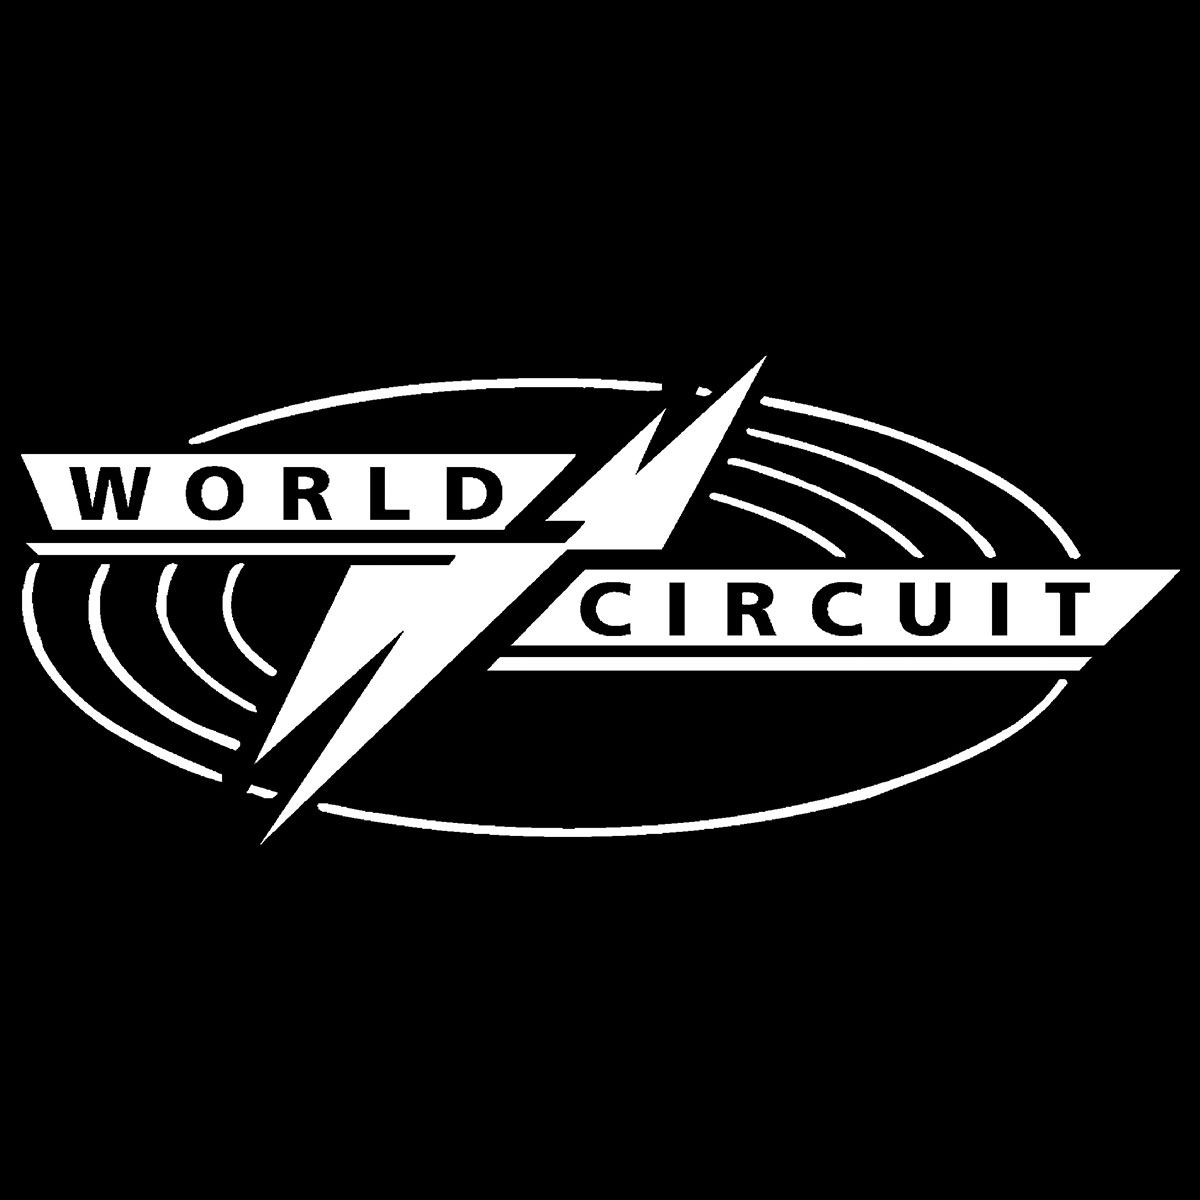 World-Circuit-Hi-Res-Logo.jpg